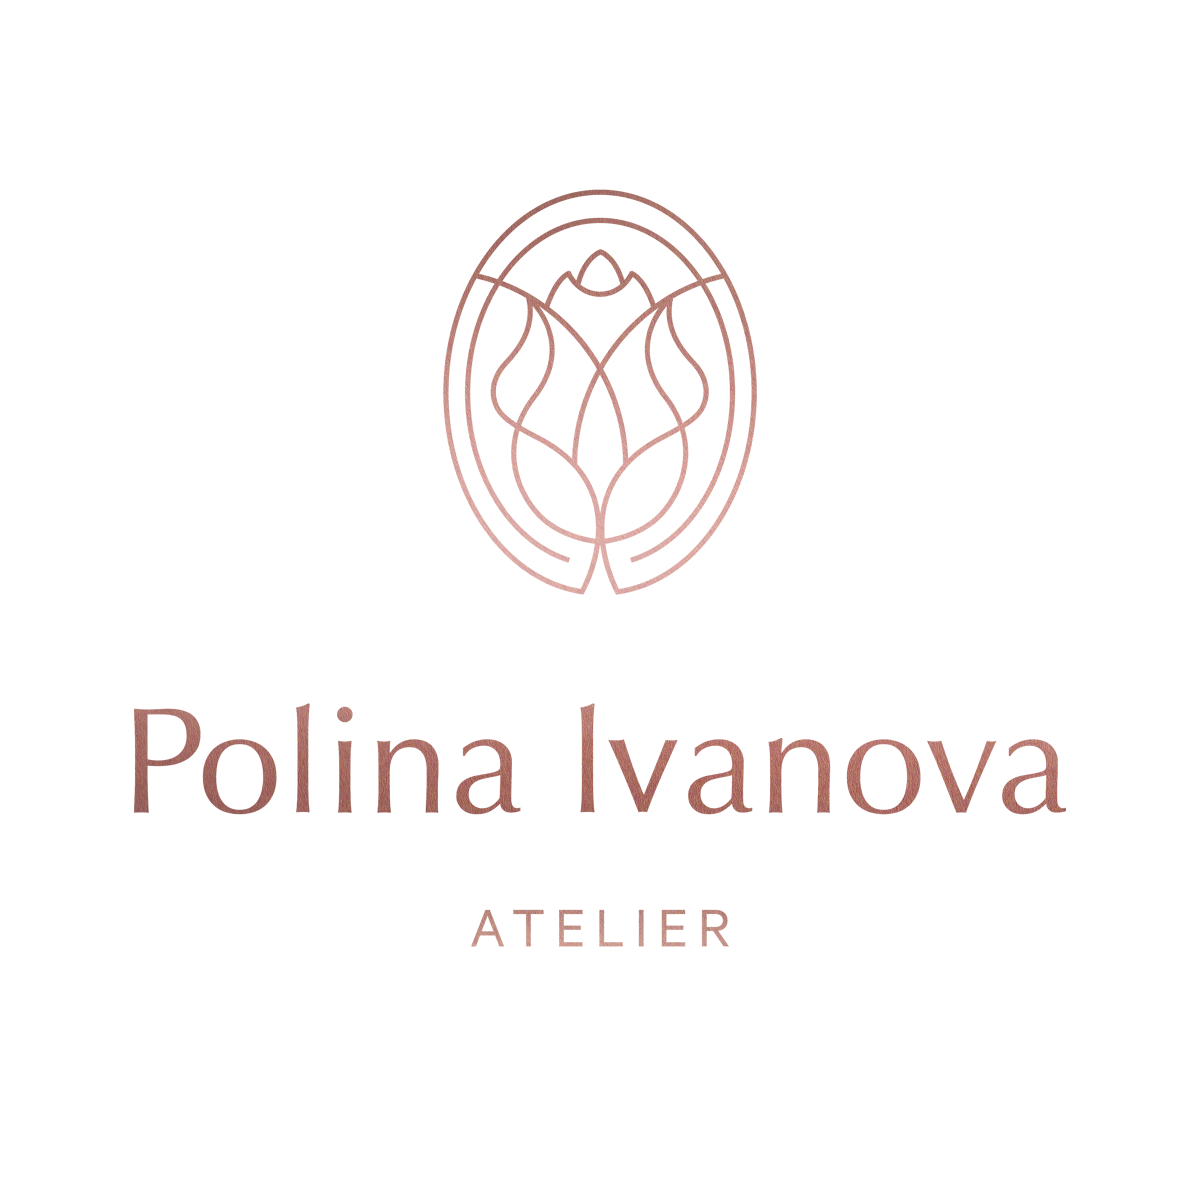 Polina Ivanova Atelier, Verona in Chantilly lace